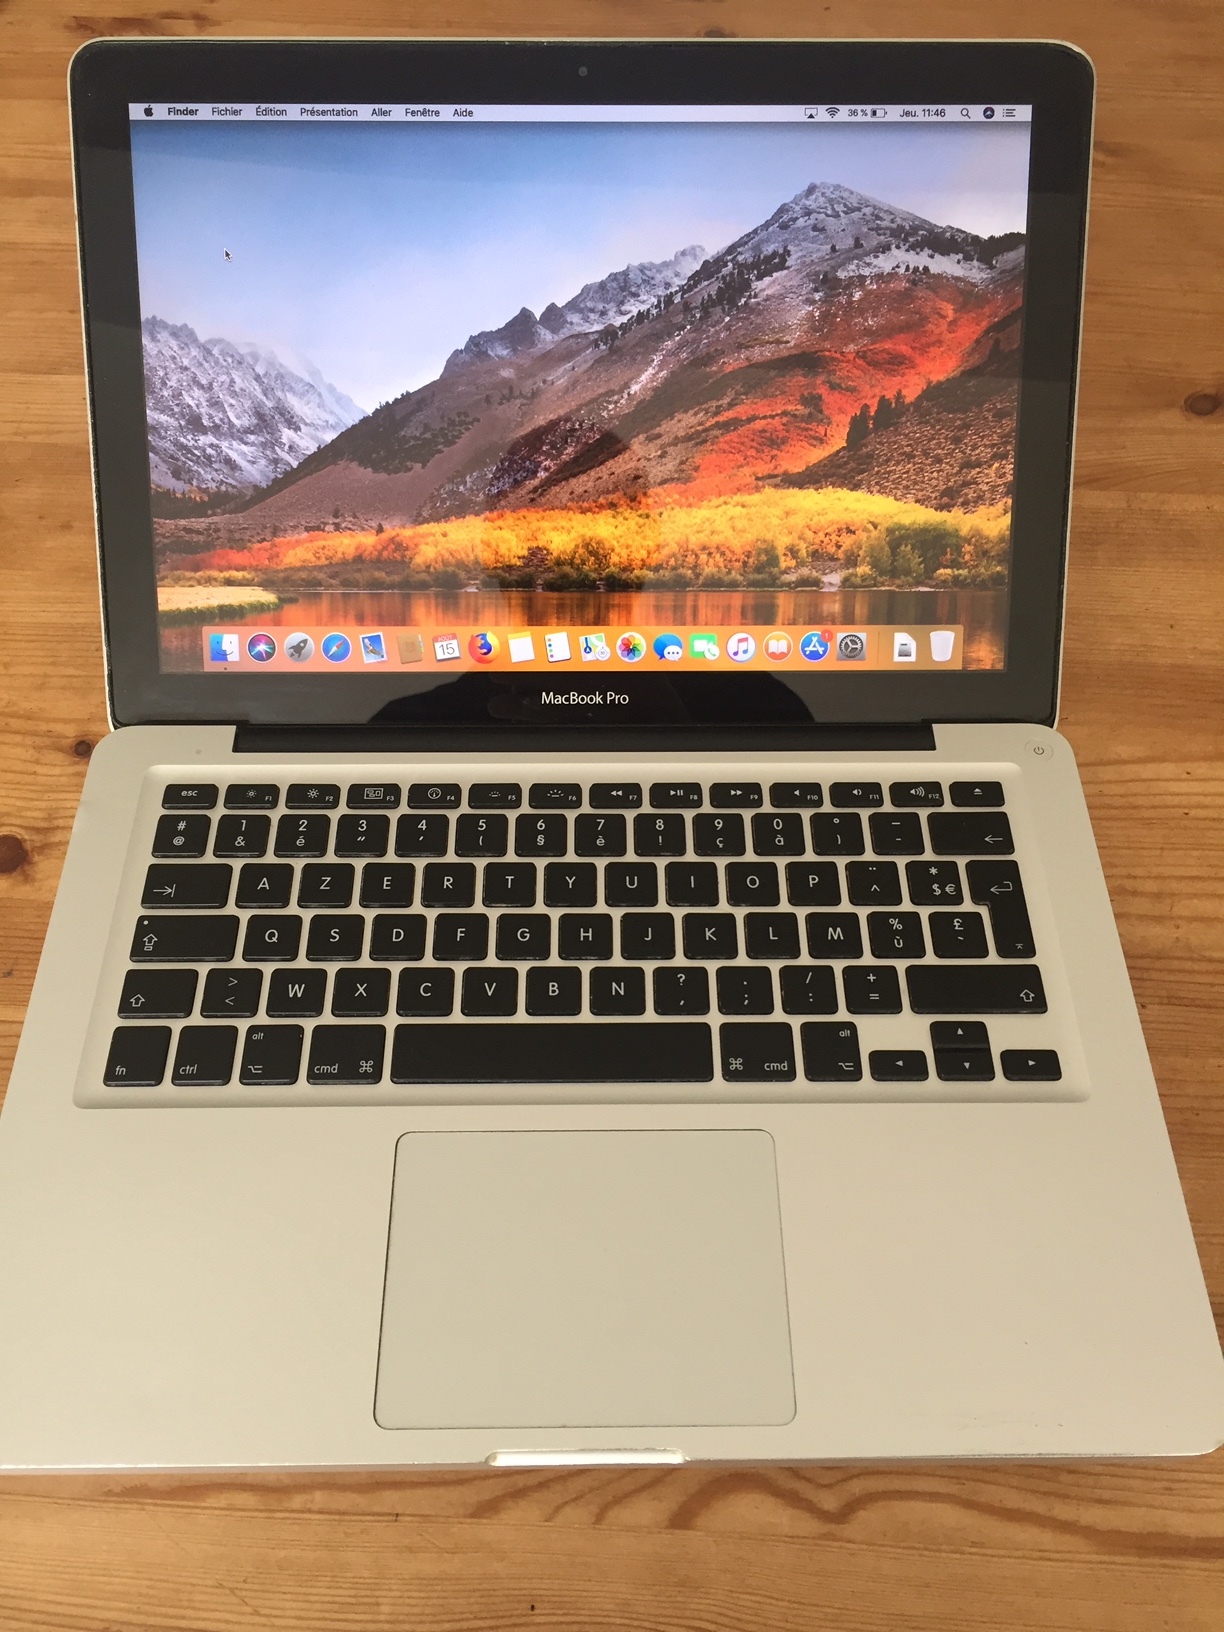 dört yüzlü şekil şüpheliyim iz  MacBook Pro 13